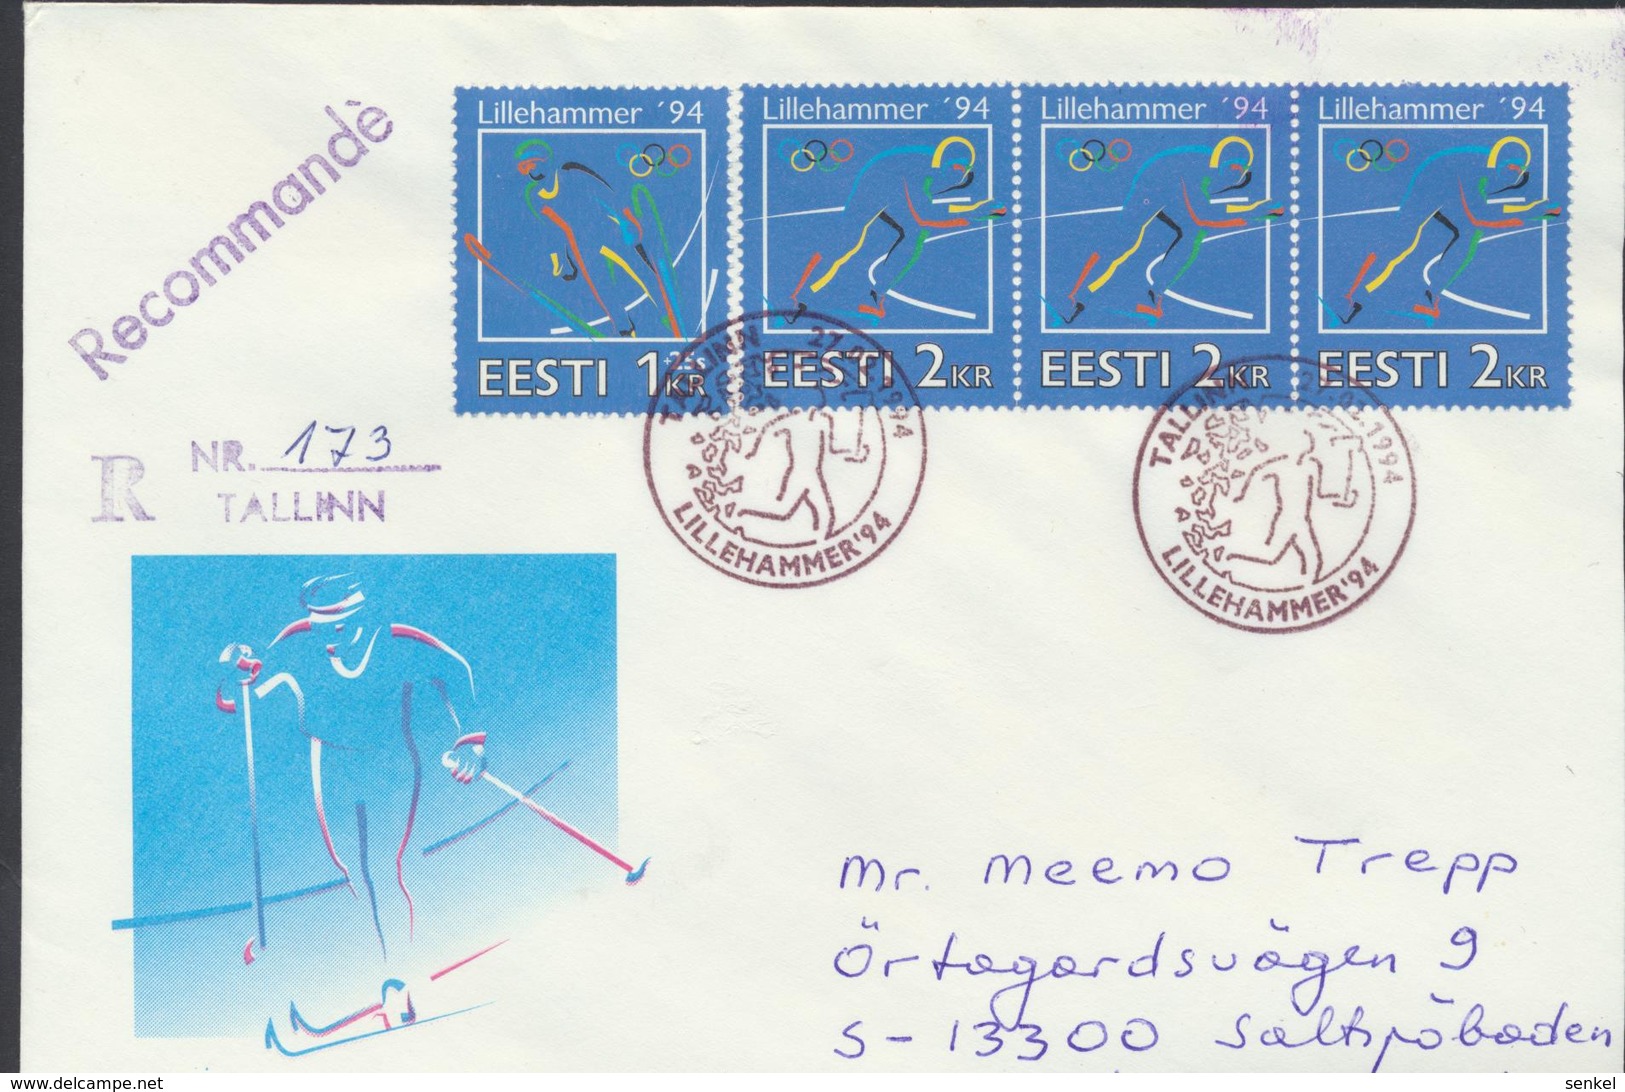 56-886 Estonia Norway Lillehammer Olympics Tallinn  27.02.1994 Recommande Letter From Post Arrival Postmark - Estonia